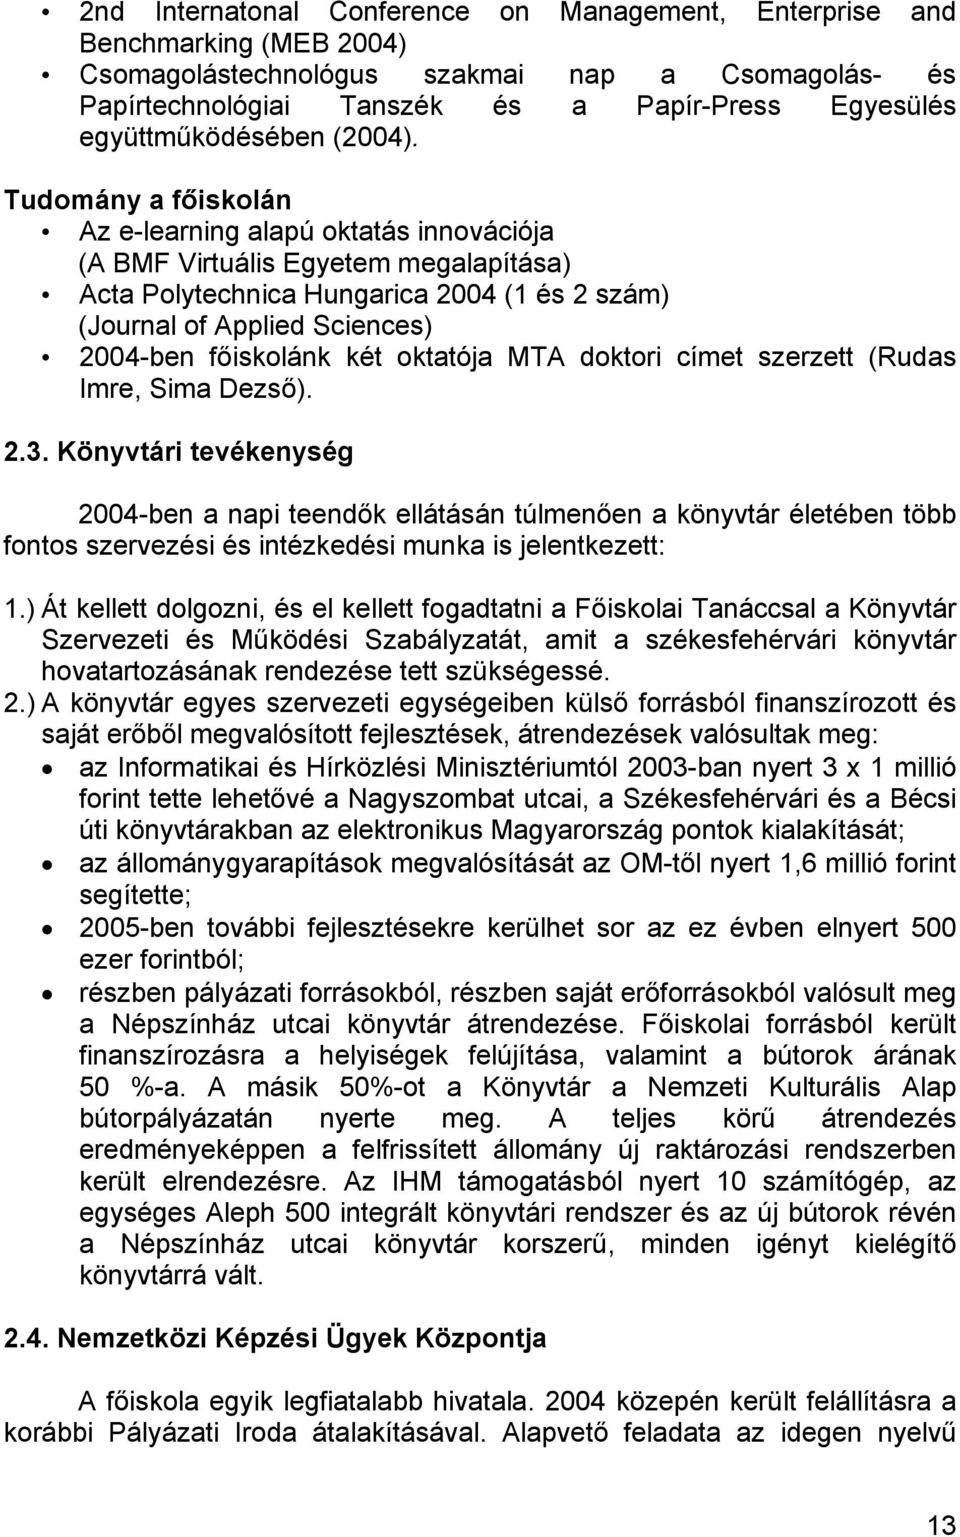 Tudomány a főiskolán Az e-learning alapú oktatás innovációja (A BMF Virtuális Egyetem megalapítása) Acta Polytechnica Hungarica 2004 (1 és 2 szám) (Journal of Applied Sciences) 2004-ben főiskolánk